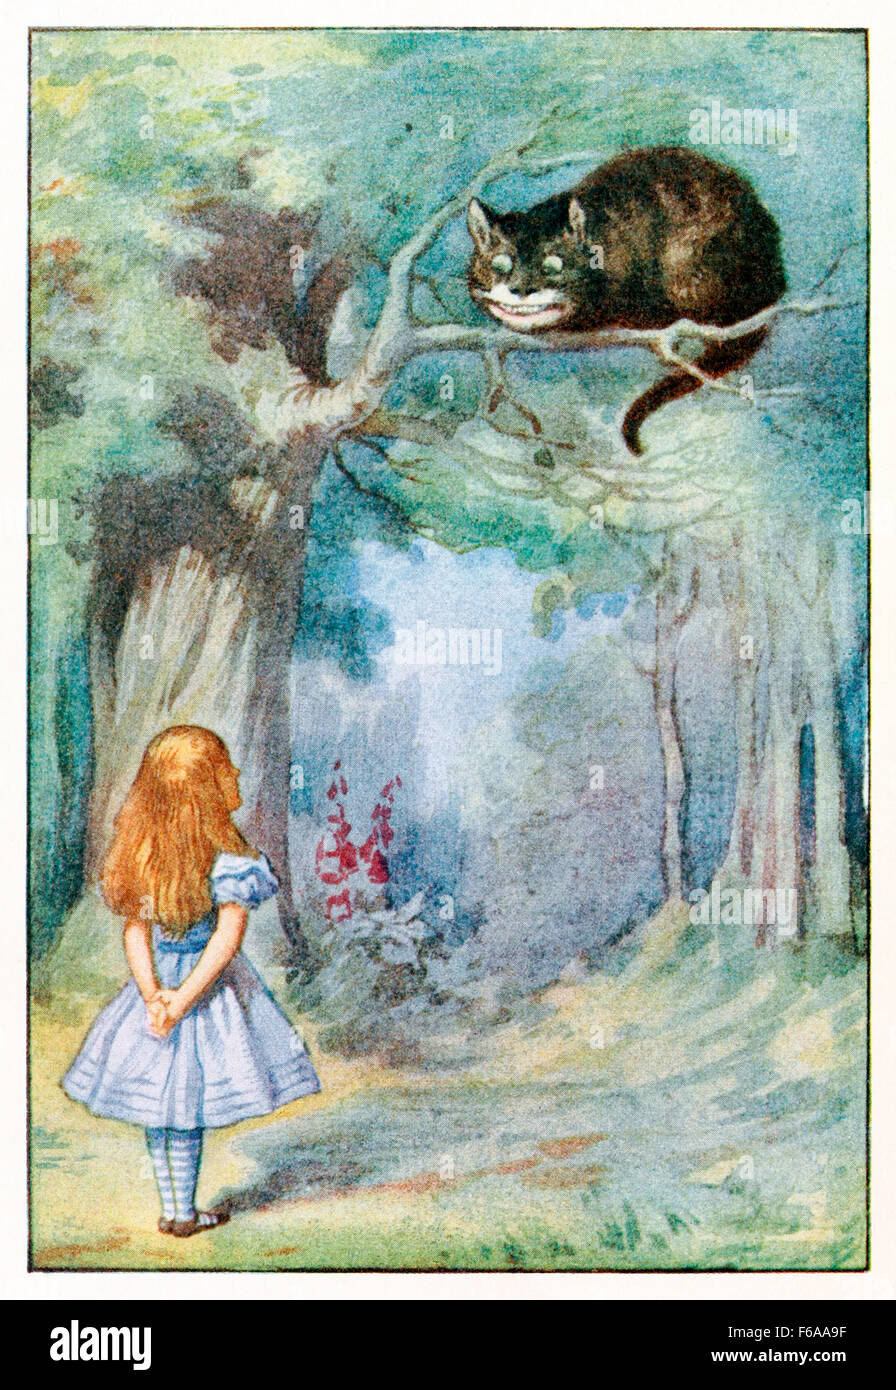 " Mi ringhio quando io sono contento e wag mio coda quando sto arrabbiato ha detto il Cheshire cat da "Alice nel paese delle meraviglie" da Lewis Carroll (1832-1898), illustrata da Sir John Tenniel. Vedere la descrizione per maggiori informazioni. Foto Stock